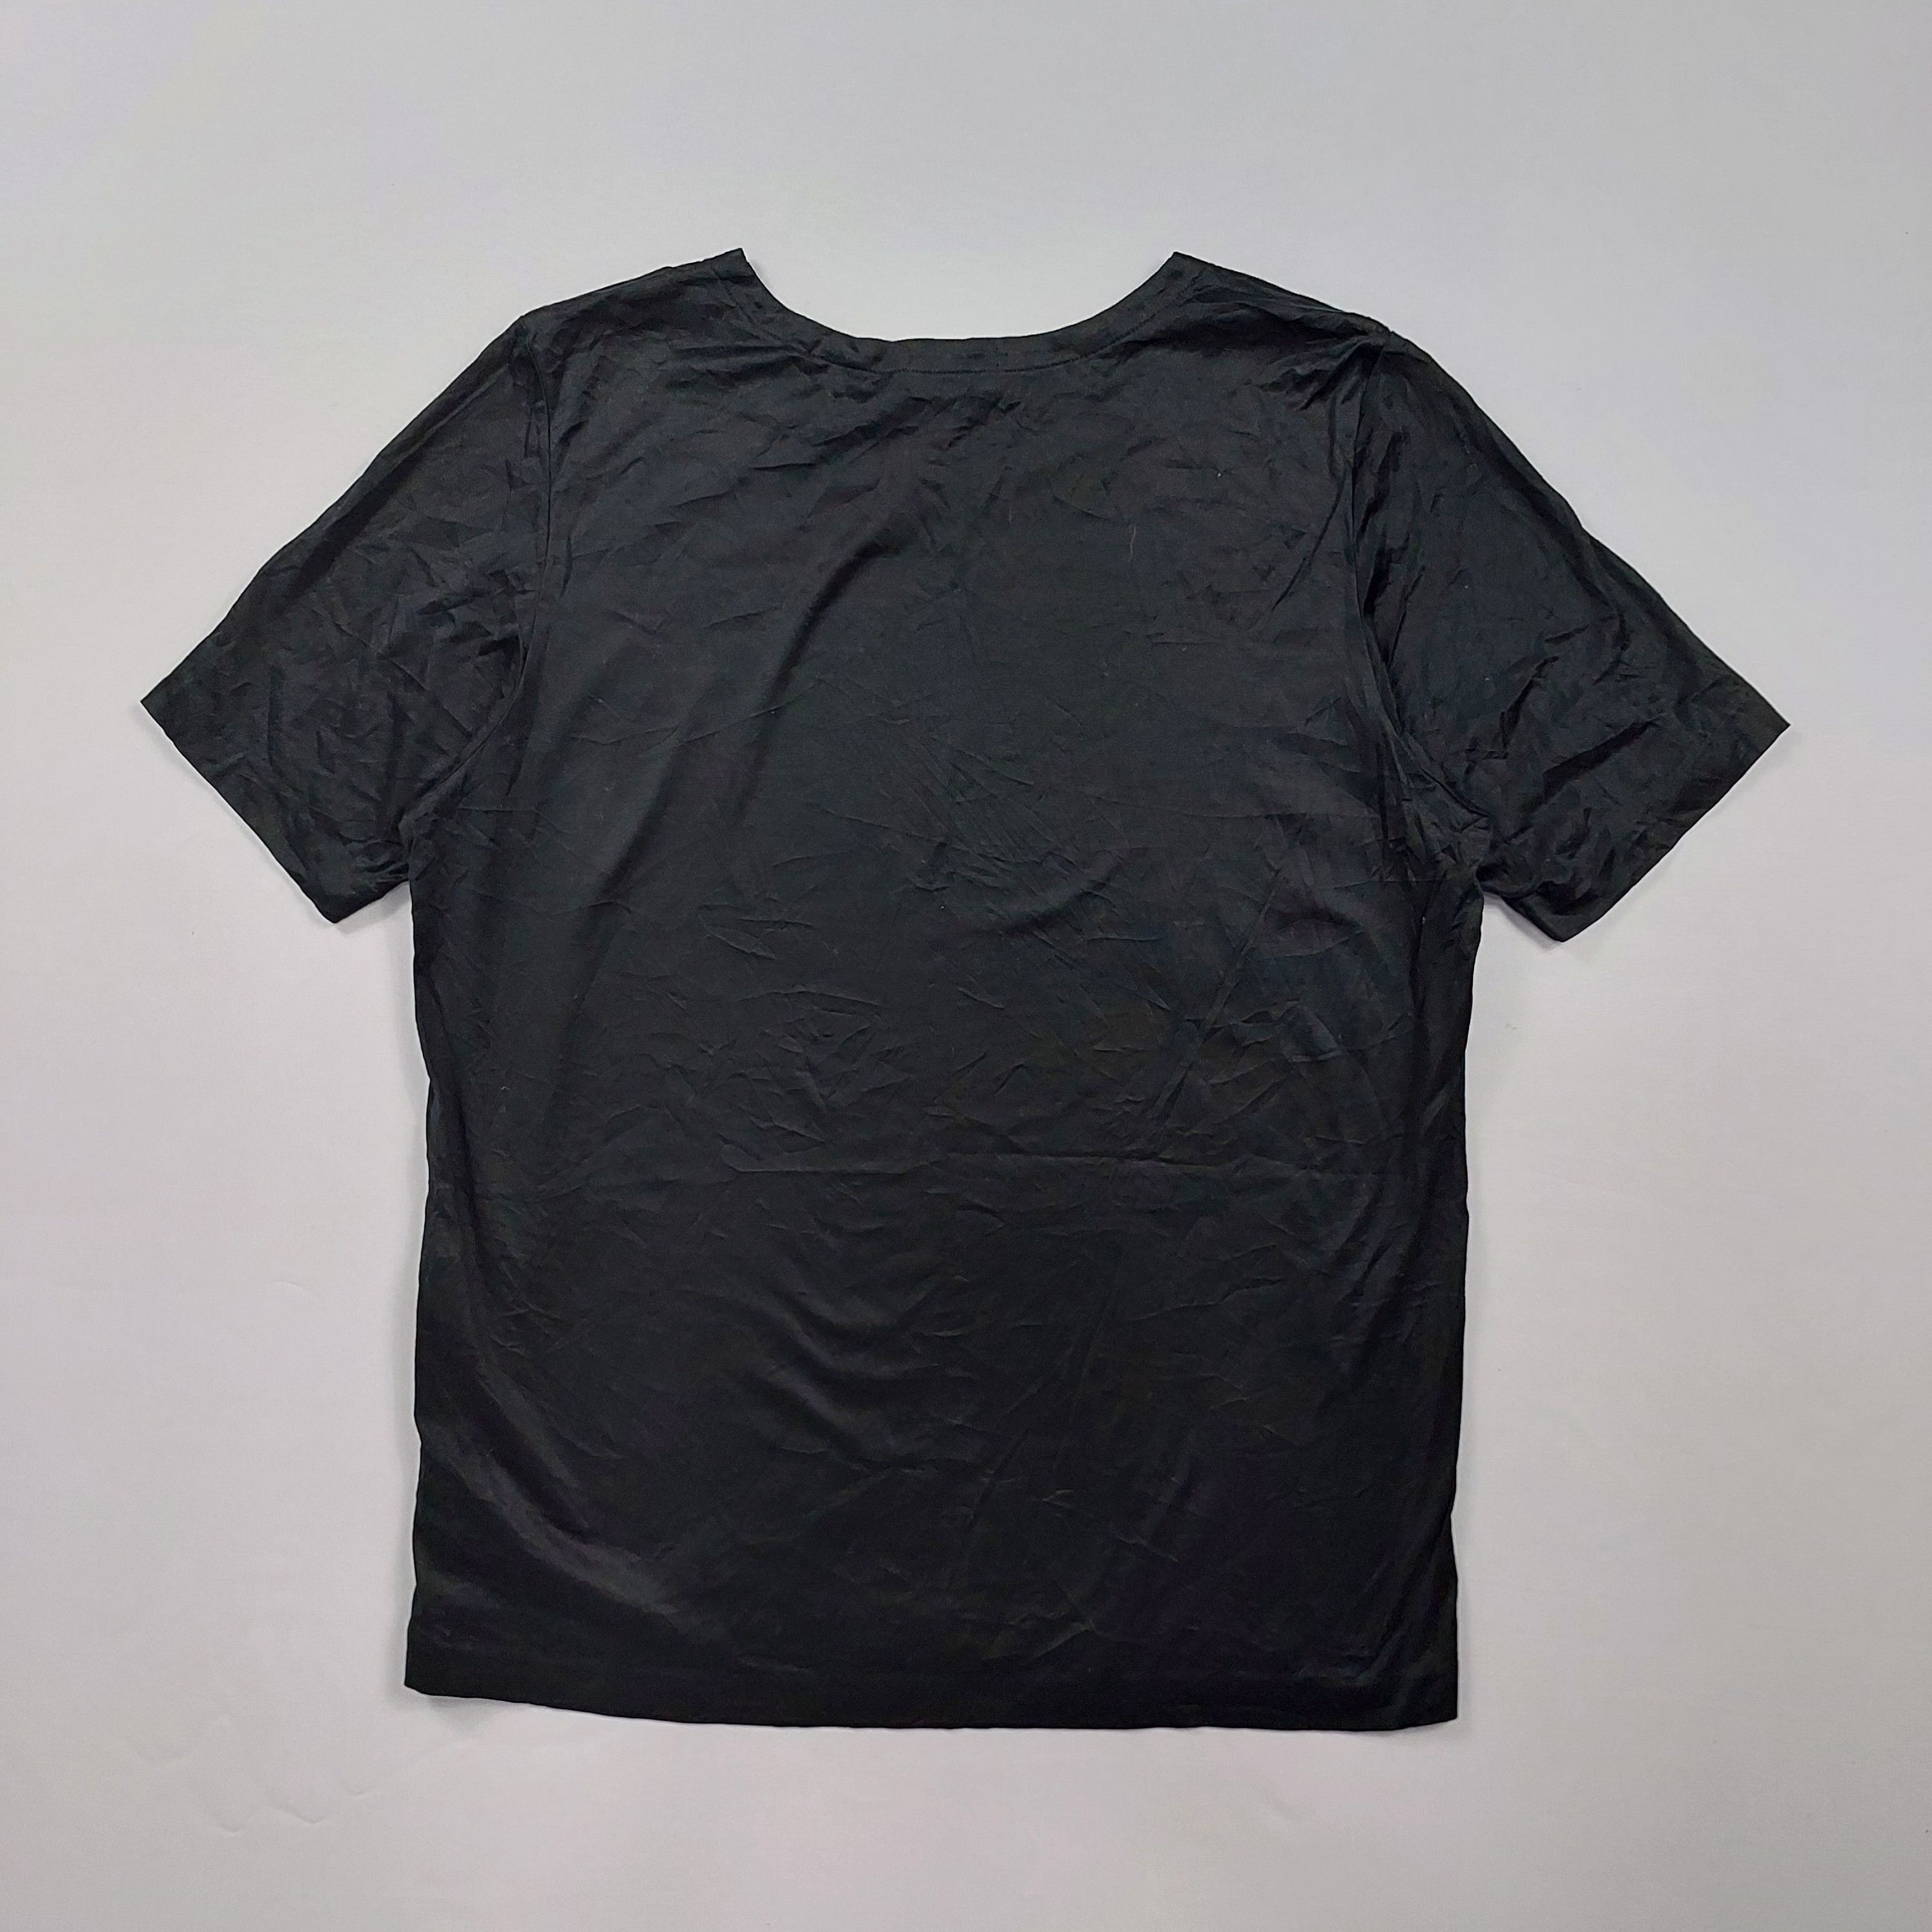 Yves Saint Laurent - Rhinestones Logo - Shirt - 2